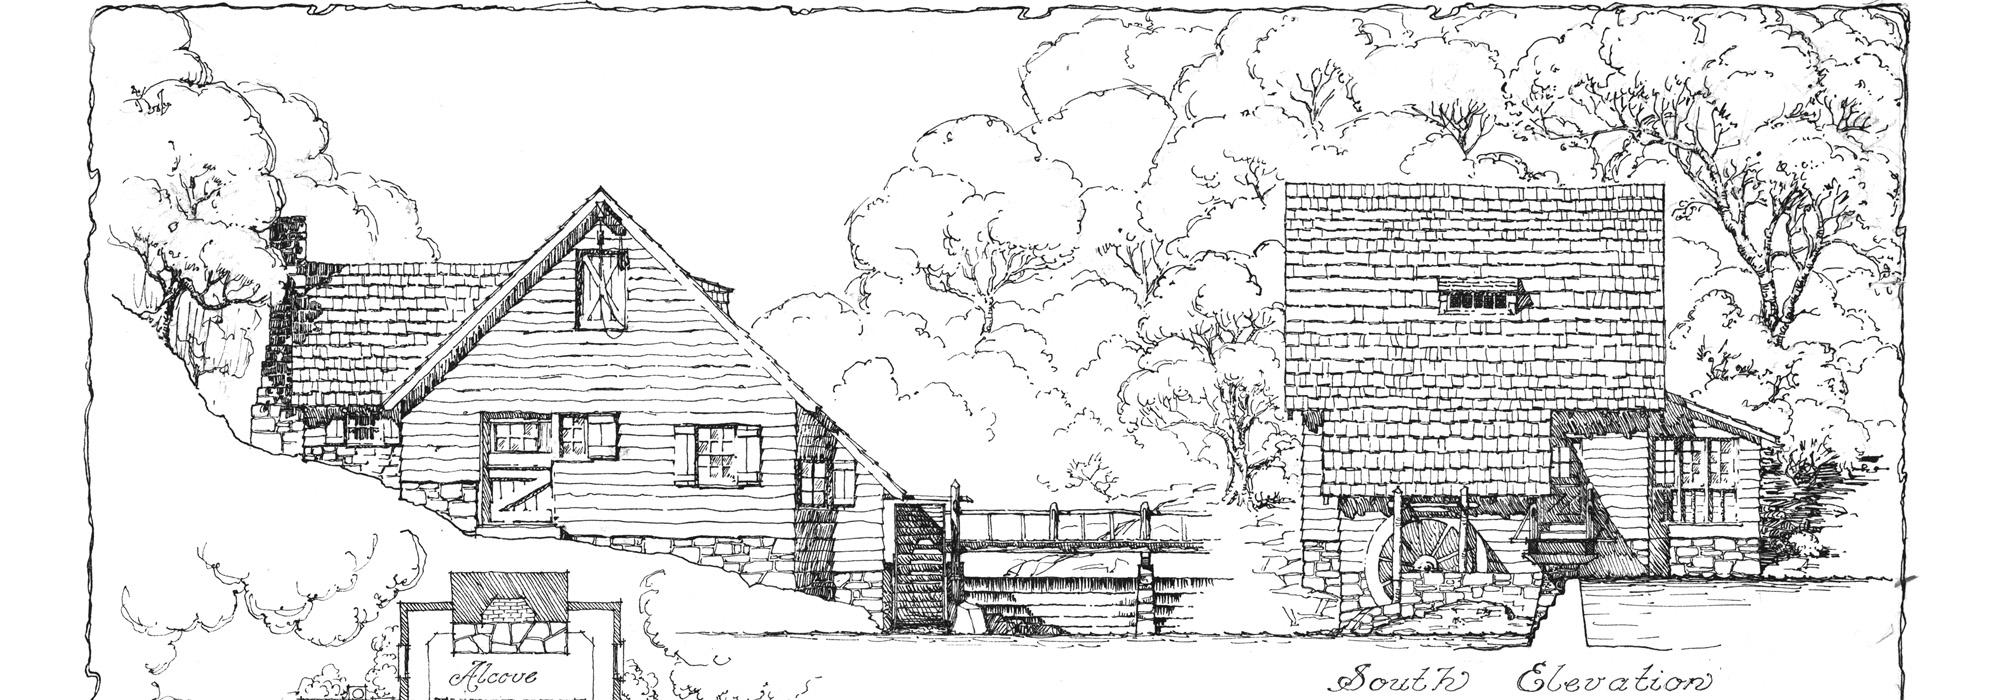 Plan of Ye Olde Mill in Mountain Brook Estates near Birmingham, AL